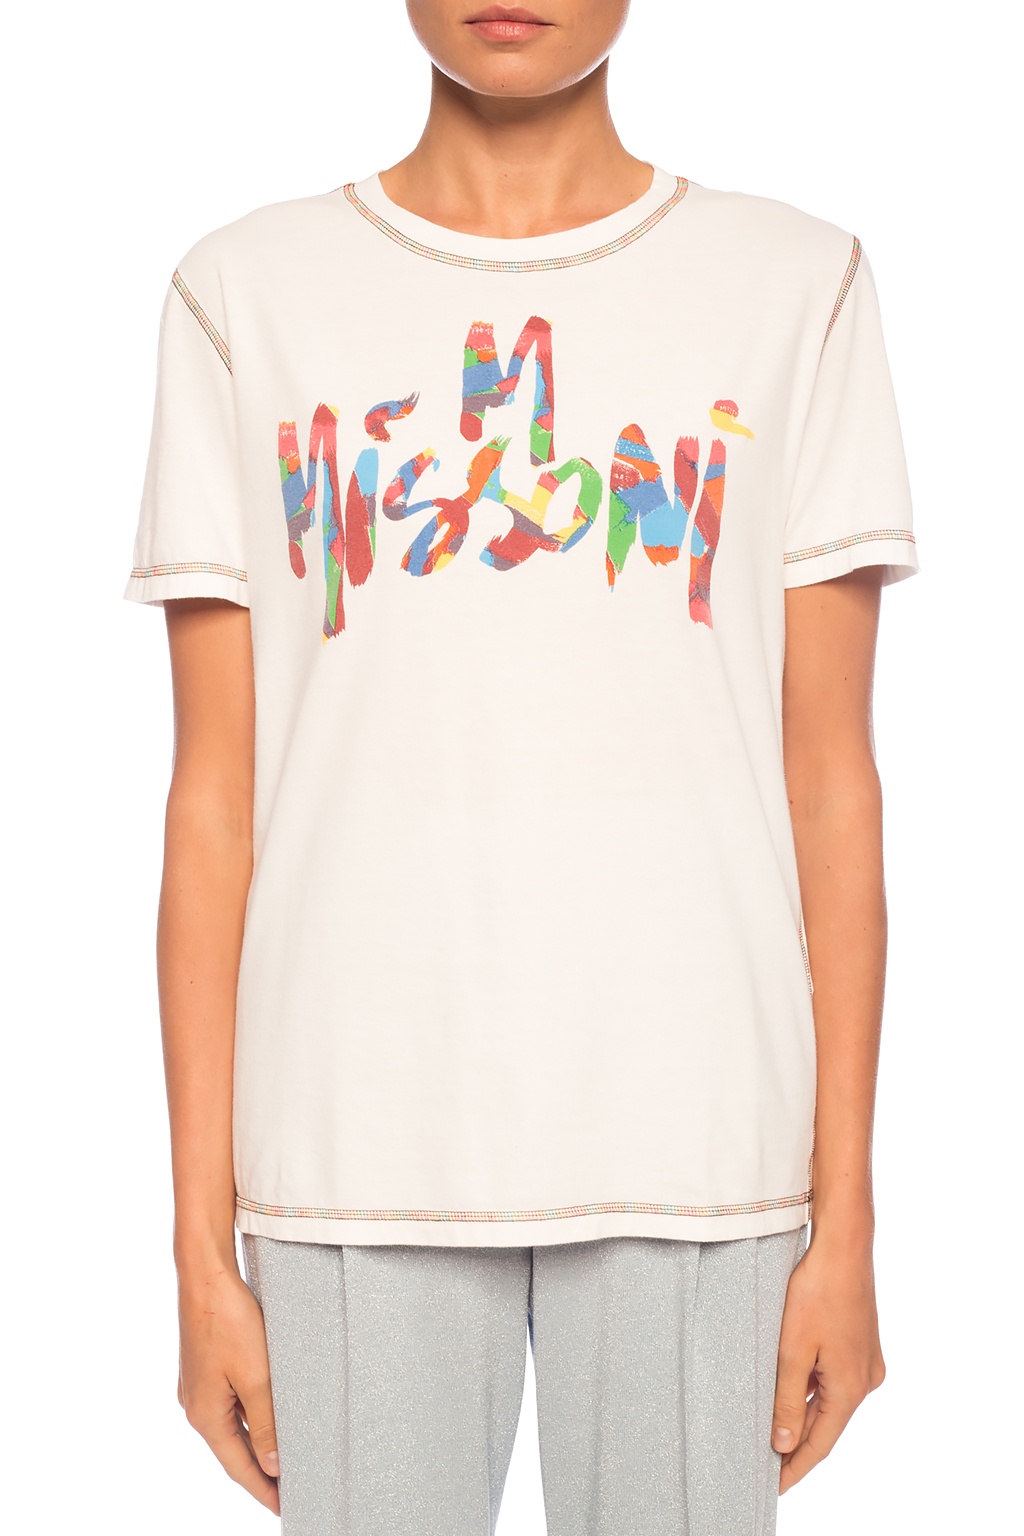 Logo-printed T-shirt M Missoni - Vitkac Spain